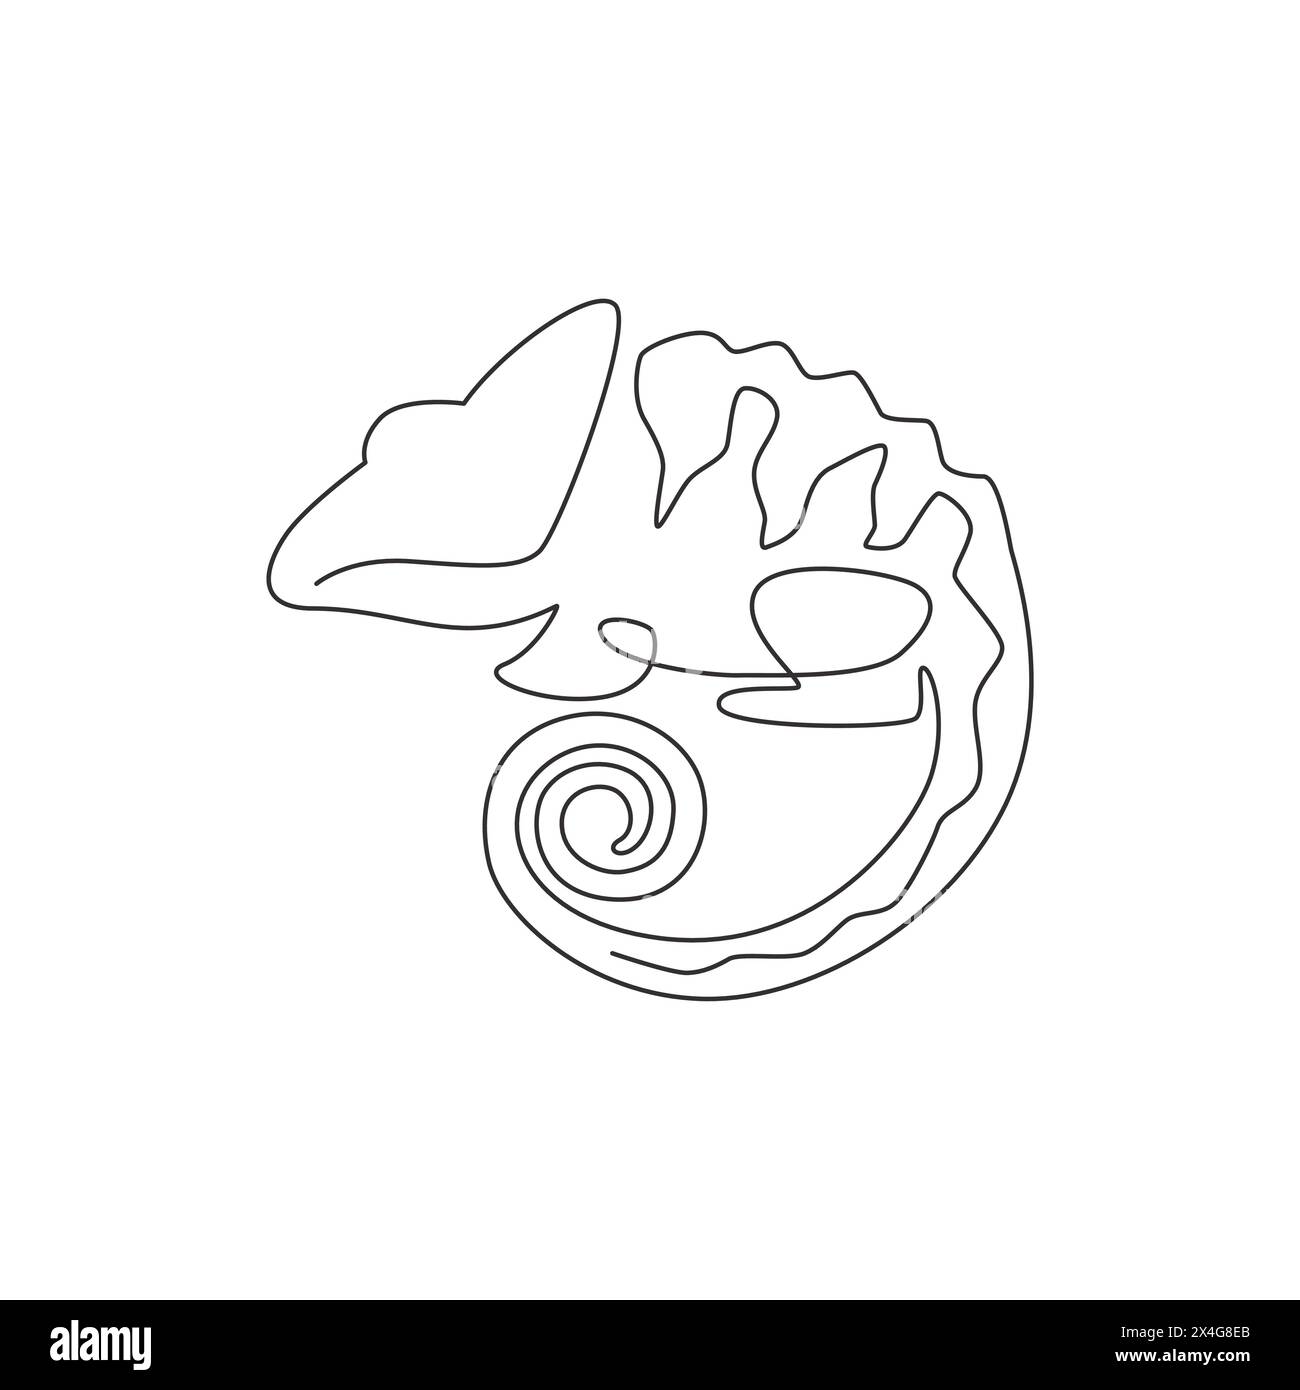 Eine durchgehende Linienzeichnung des Beauty-Chamäleons mit spiralförmigem Schwanz-Maskottchenkonzept für die Reptilienliebhaber-Gesellschaft. Exotisches Reptilientier für Firmenbuch Stock Vektor